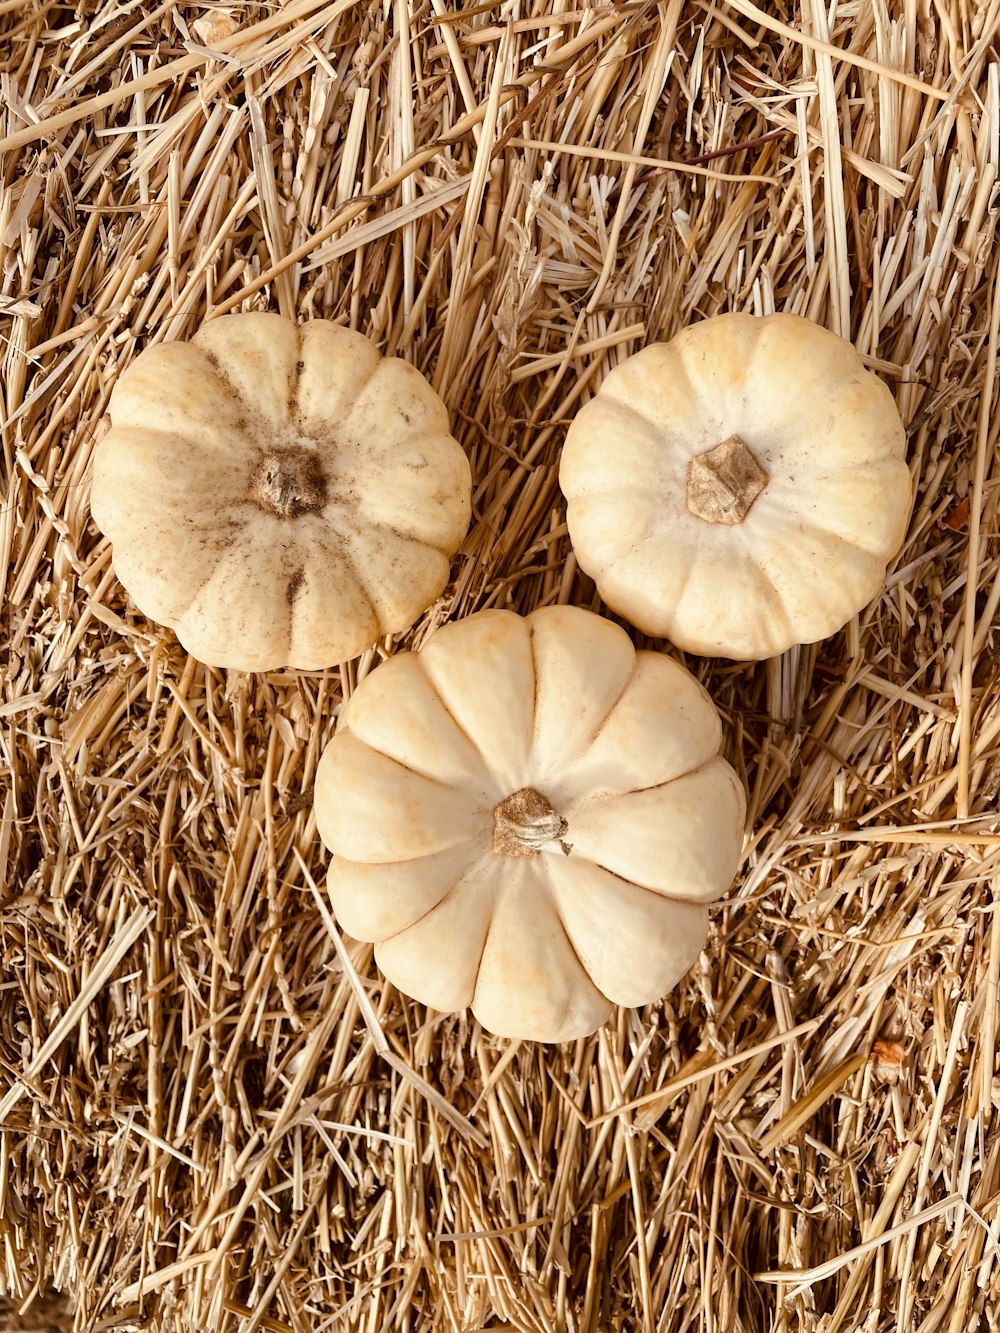 white garlic on brown dried grass